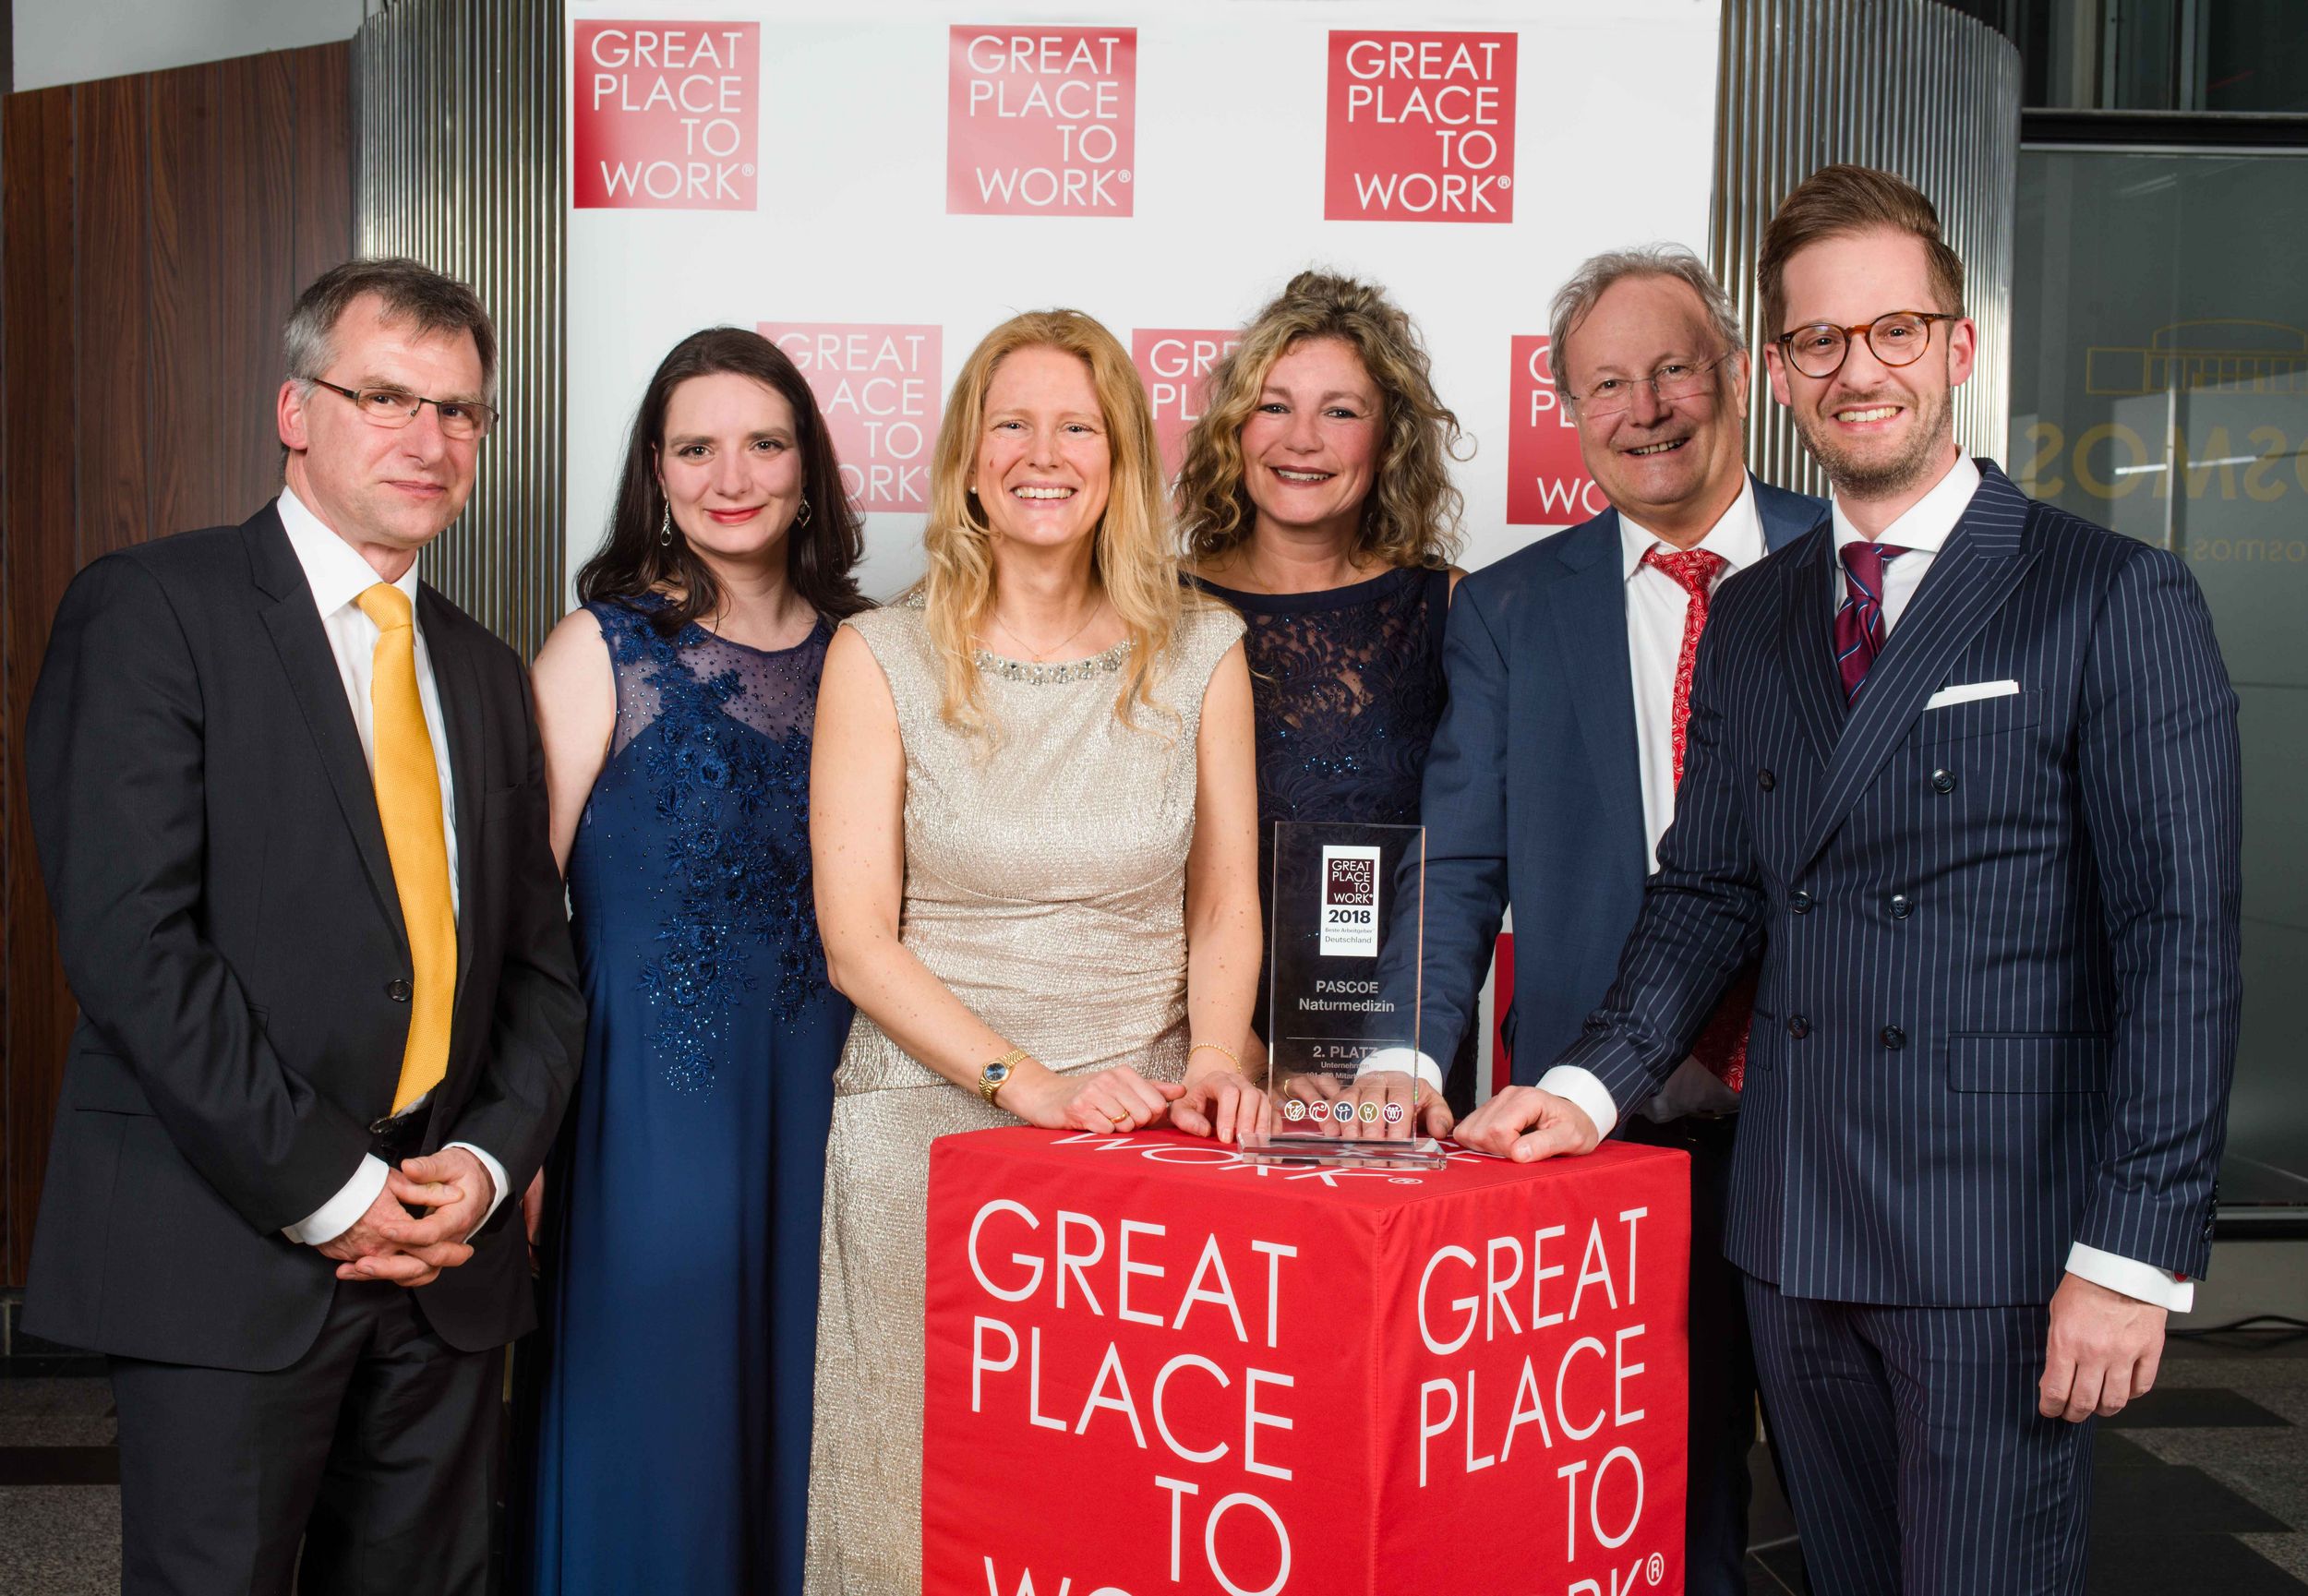 Pascoe zum achten Mal unter den besten Arbeitgebern in Deutschland bei Great Place To Work